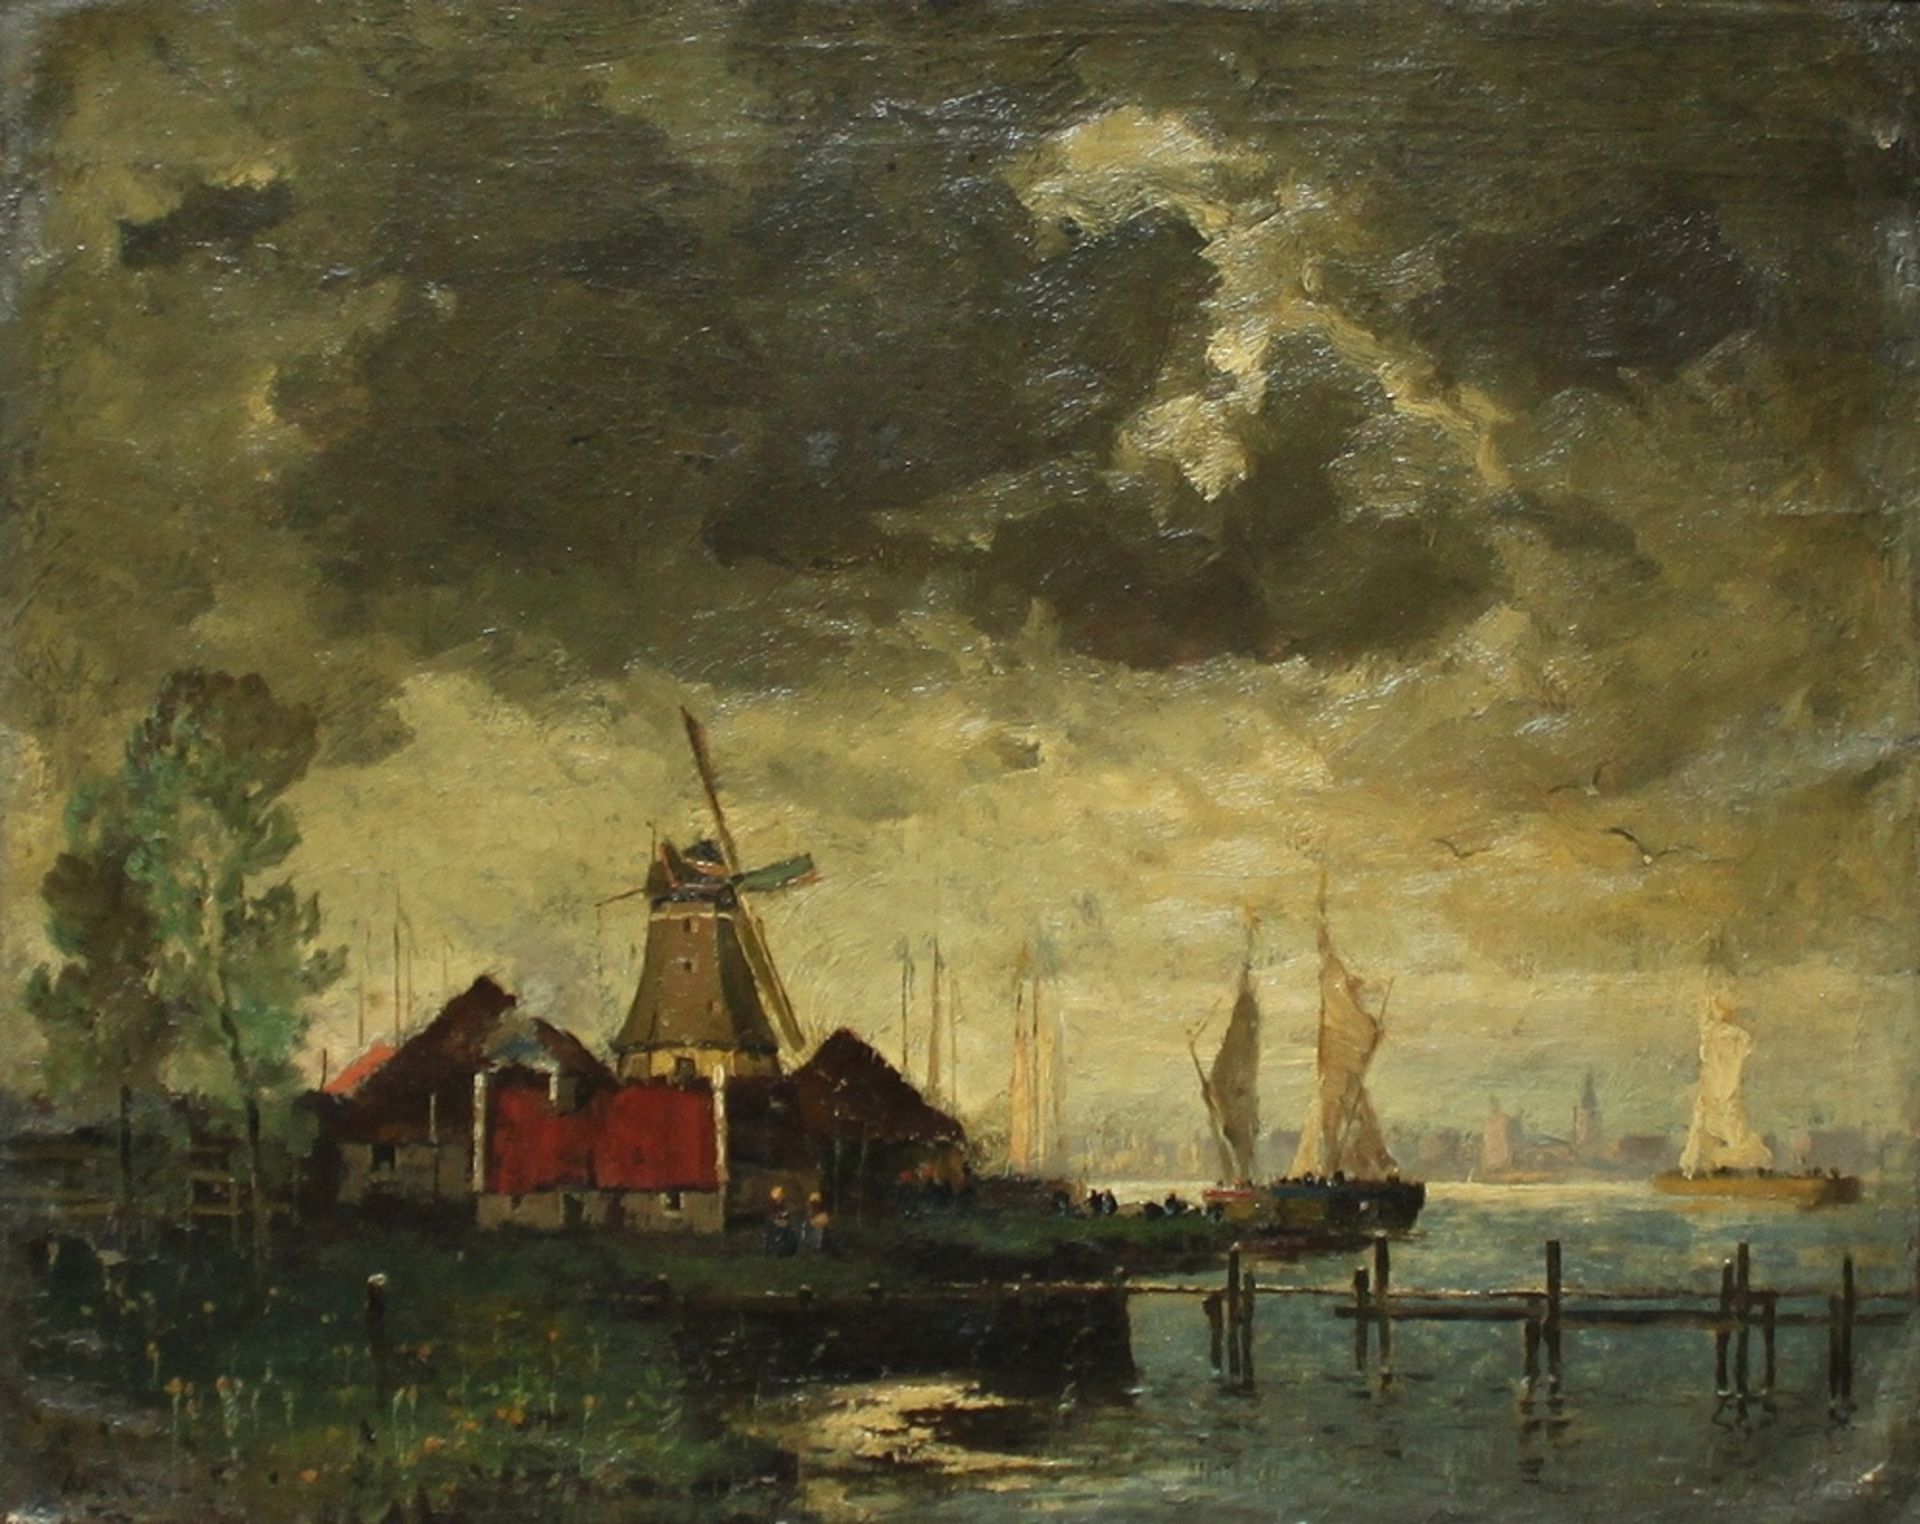 Holländische Landschaft mit Windmühle und Schiffen. Ölmalerei (Mischtechnik) auf Leinwand über